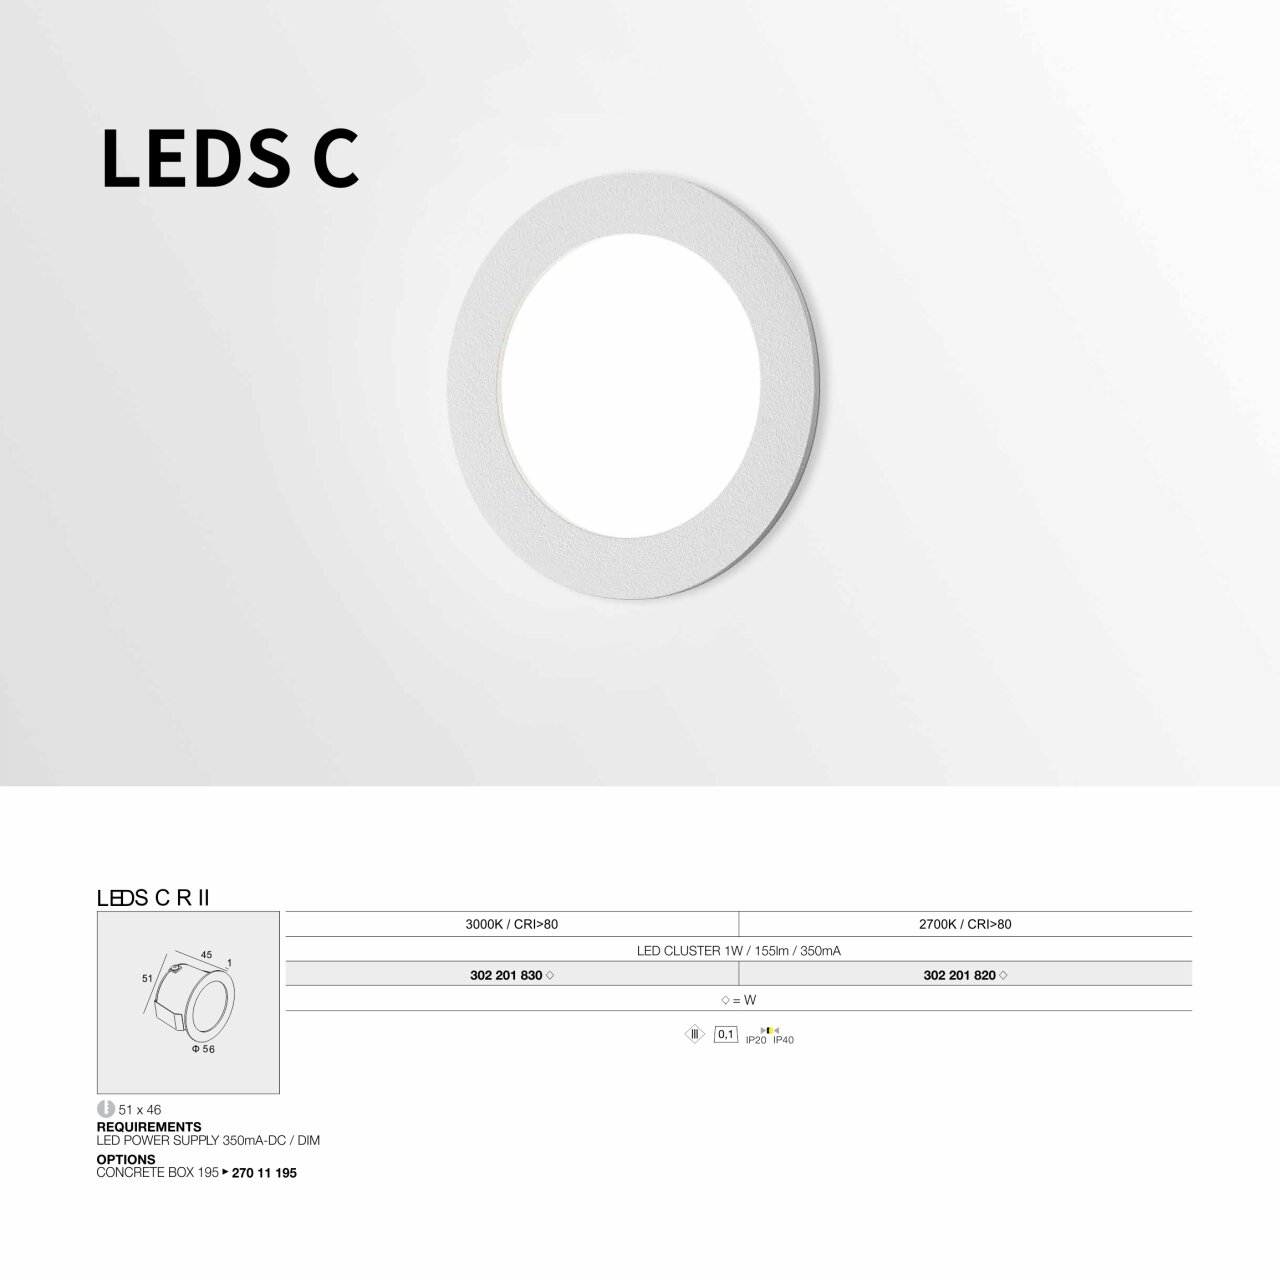 LEDSC